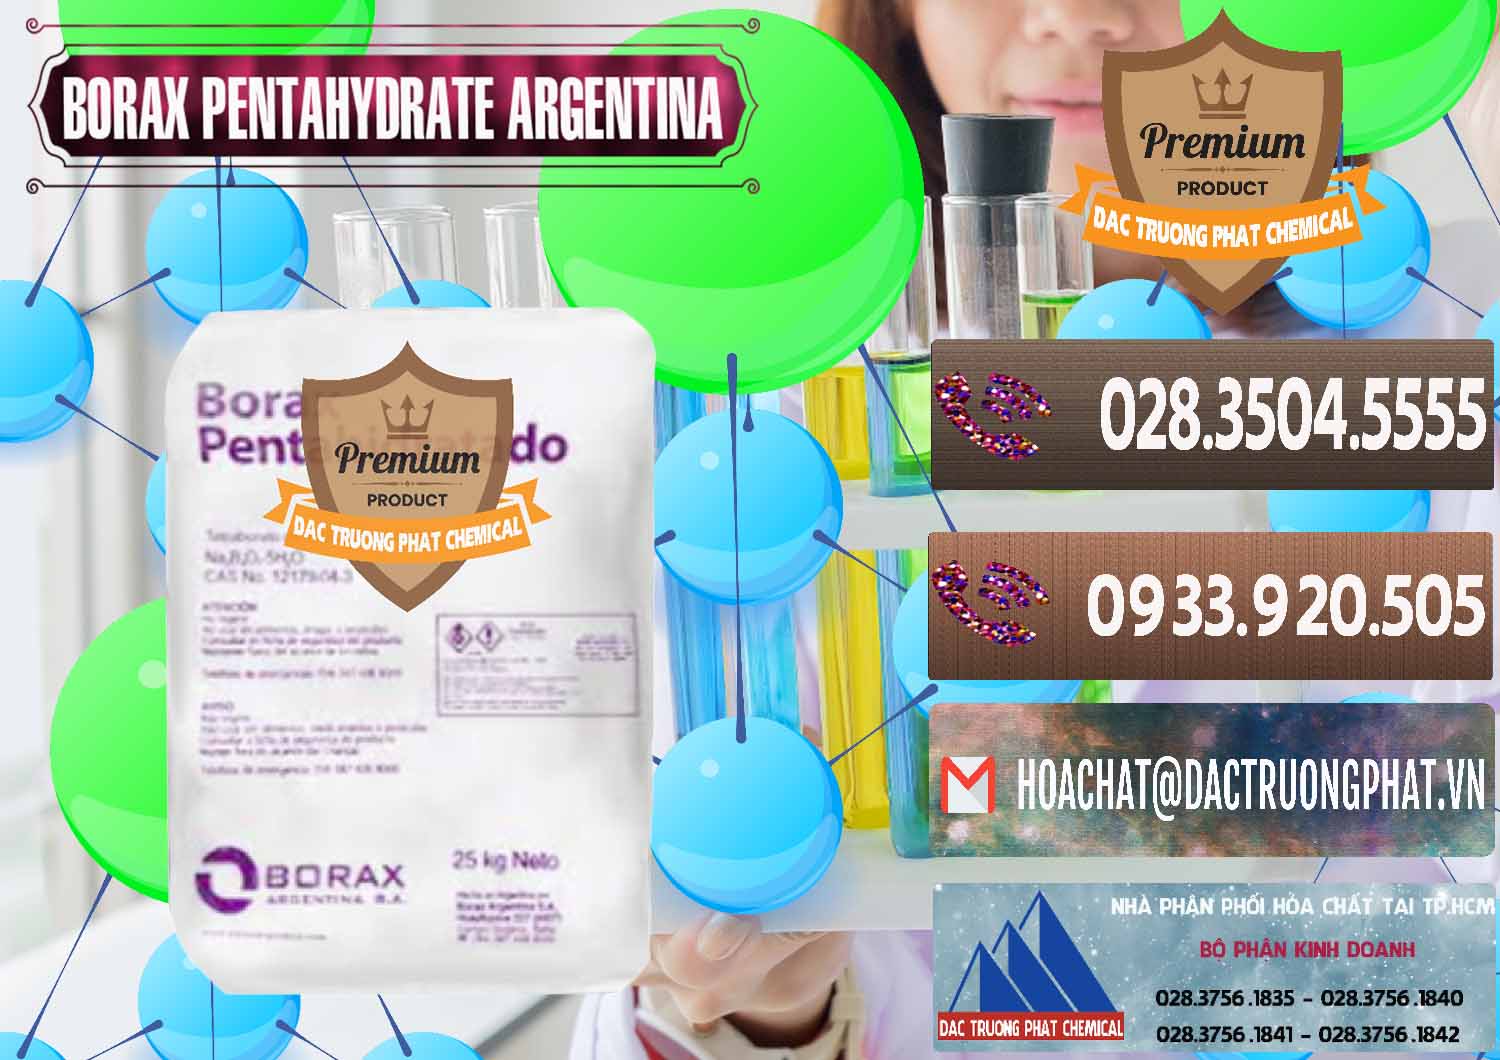 Bán ( cung cấp ) Borax Pentahydrate Argentina - 0447 - Cty cung cấp & phân phối hóa chất tại TP.HCM - hoachatviet.net